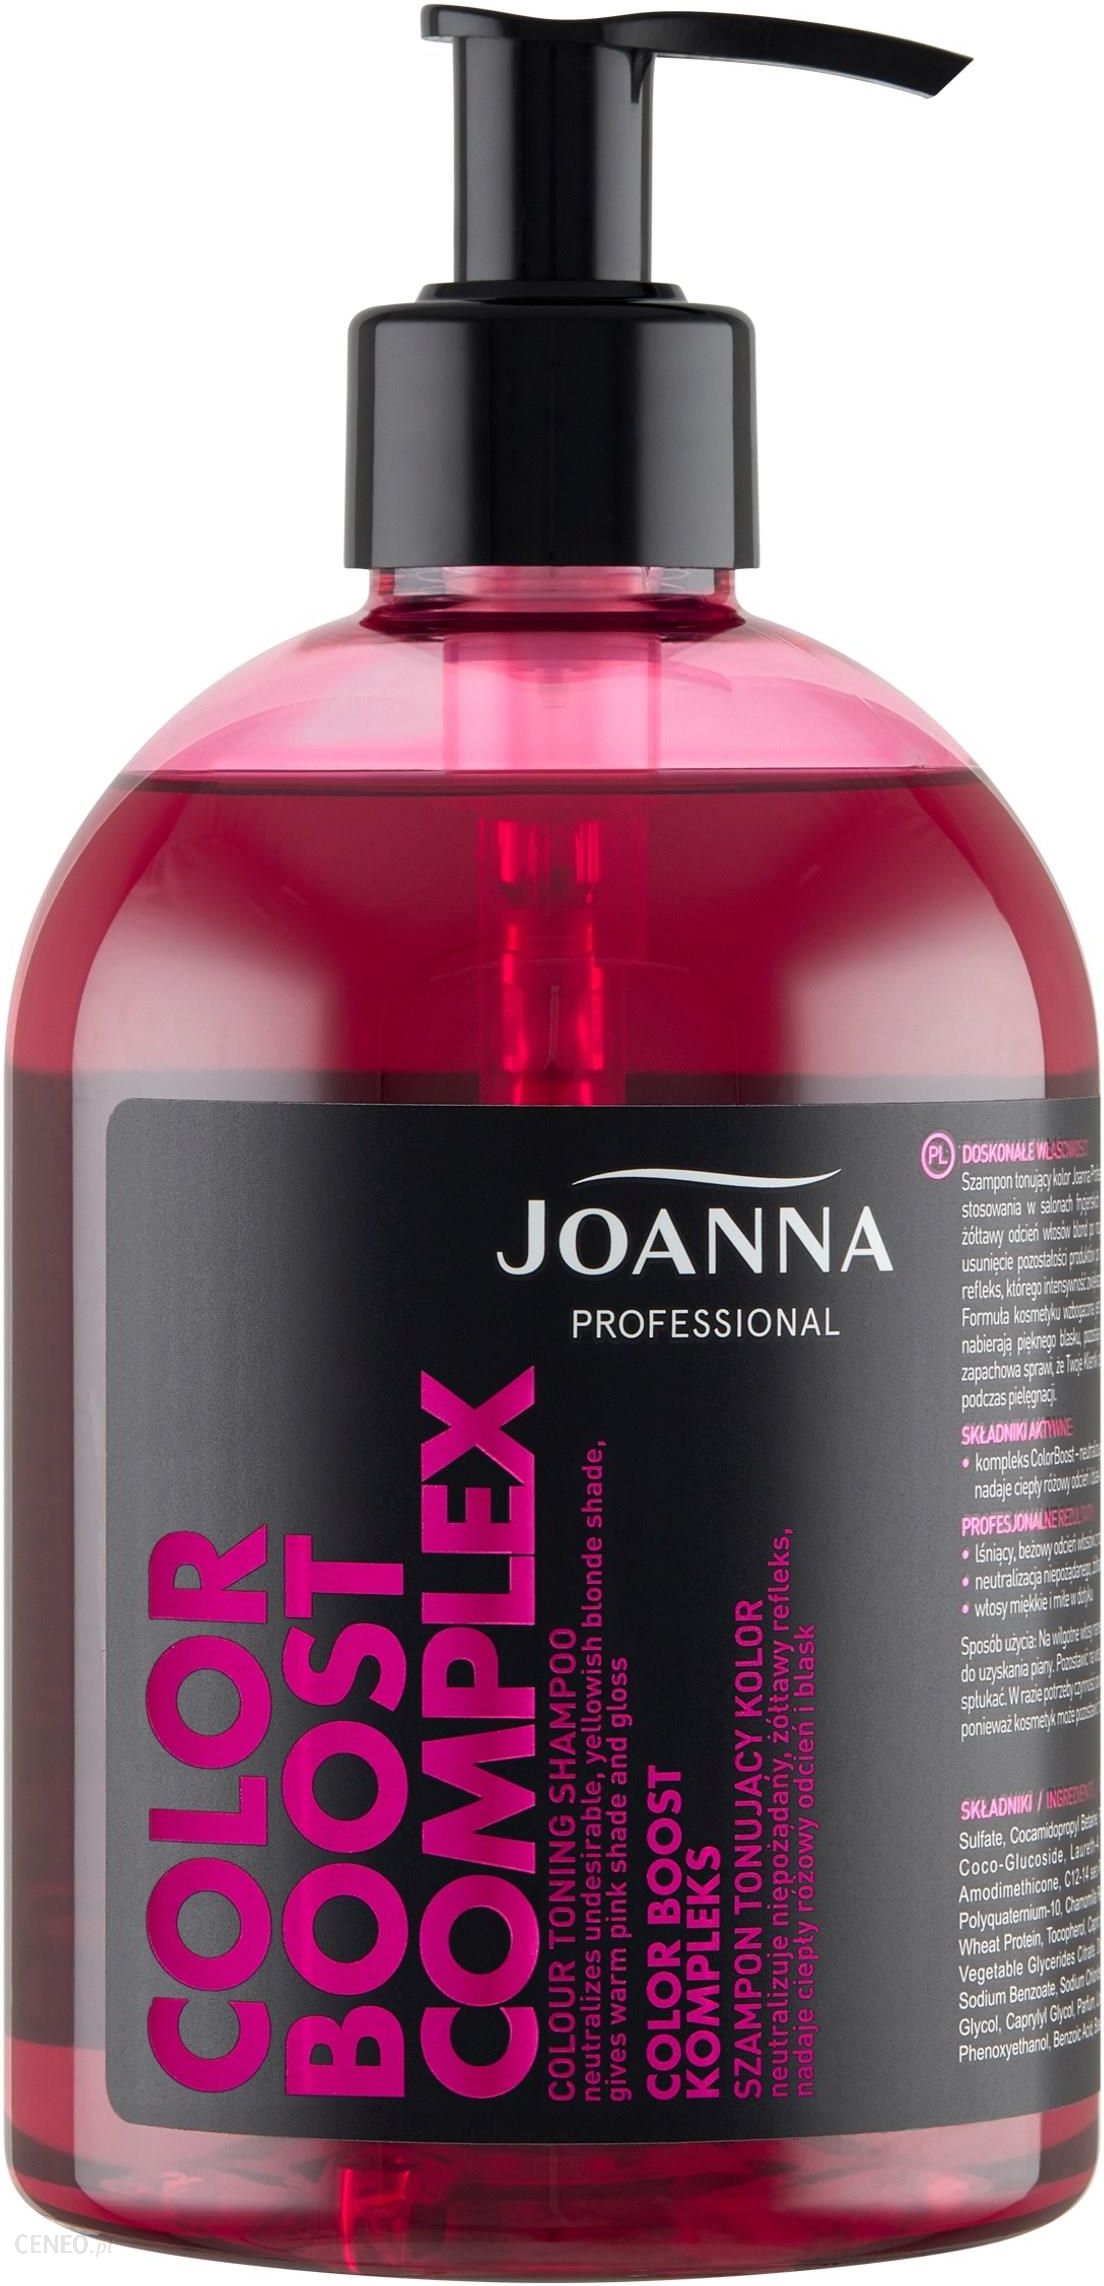 joanna szampon stabilizyjujacy wizaz